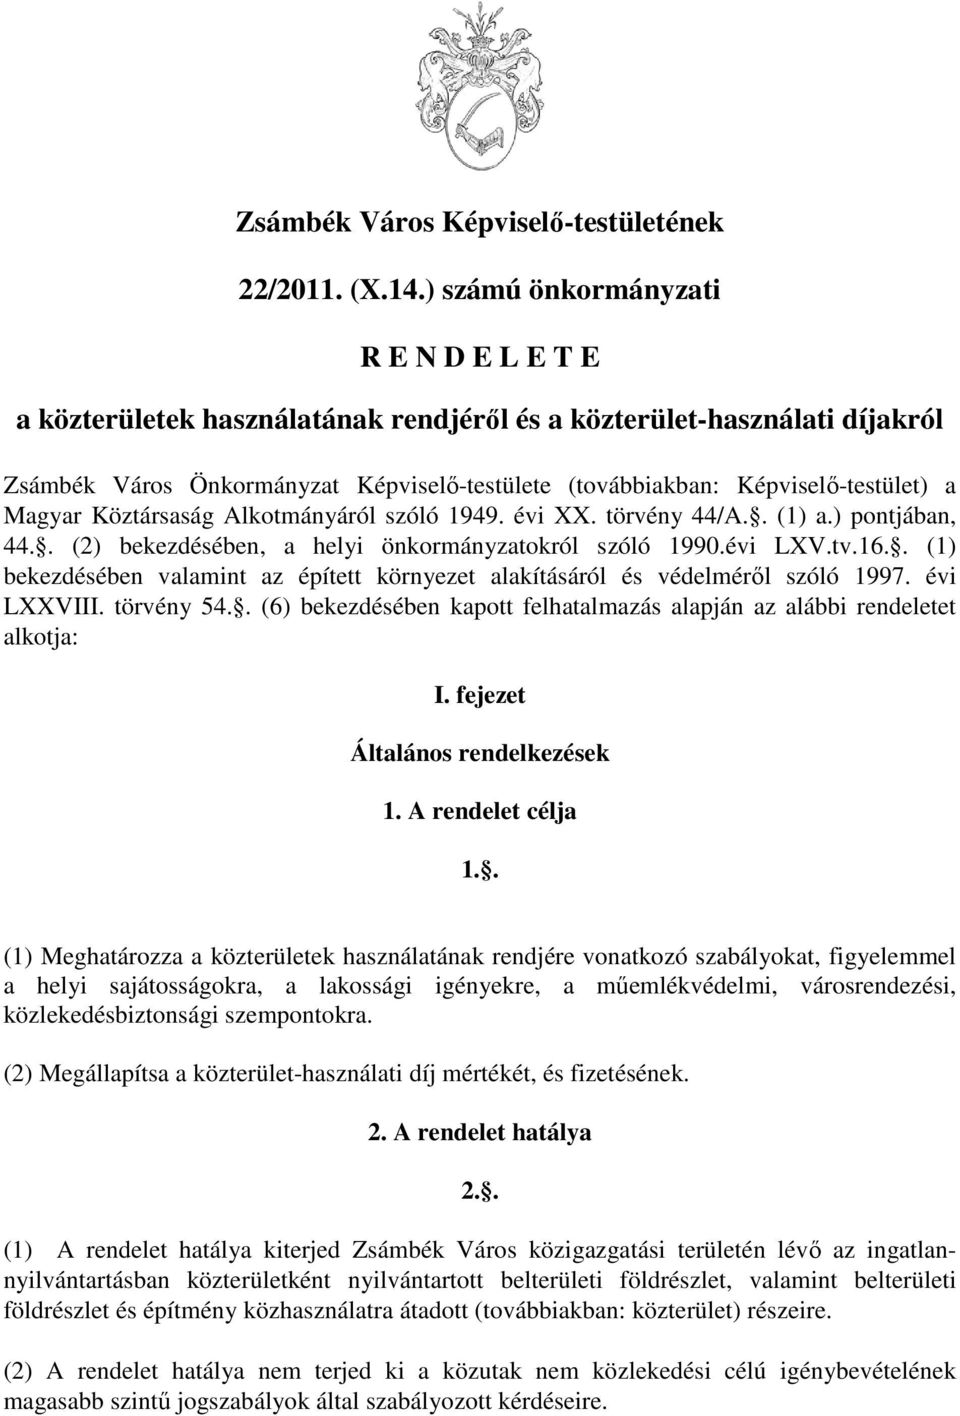 Magyar Köztársaság Alkotmányáról szóló 1949. évi XX. törvény 44/A.. (1) a.) pontjában, 44.. (2) bekezdésében, a helyi önkormányzatokról szóló 1990.évi LXV.tv.16.